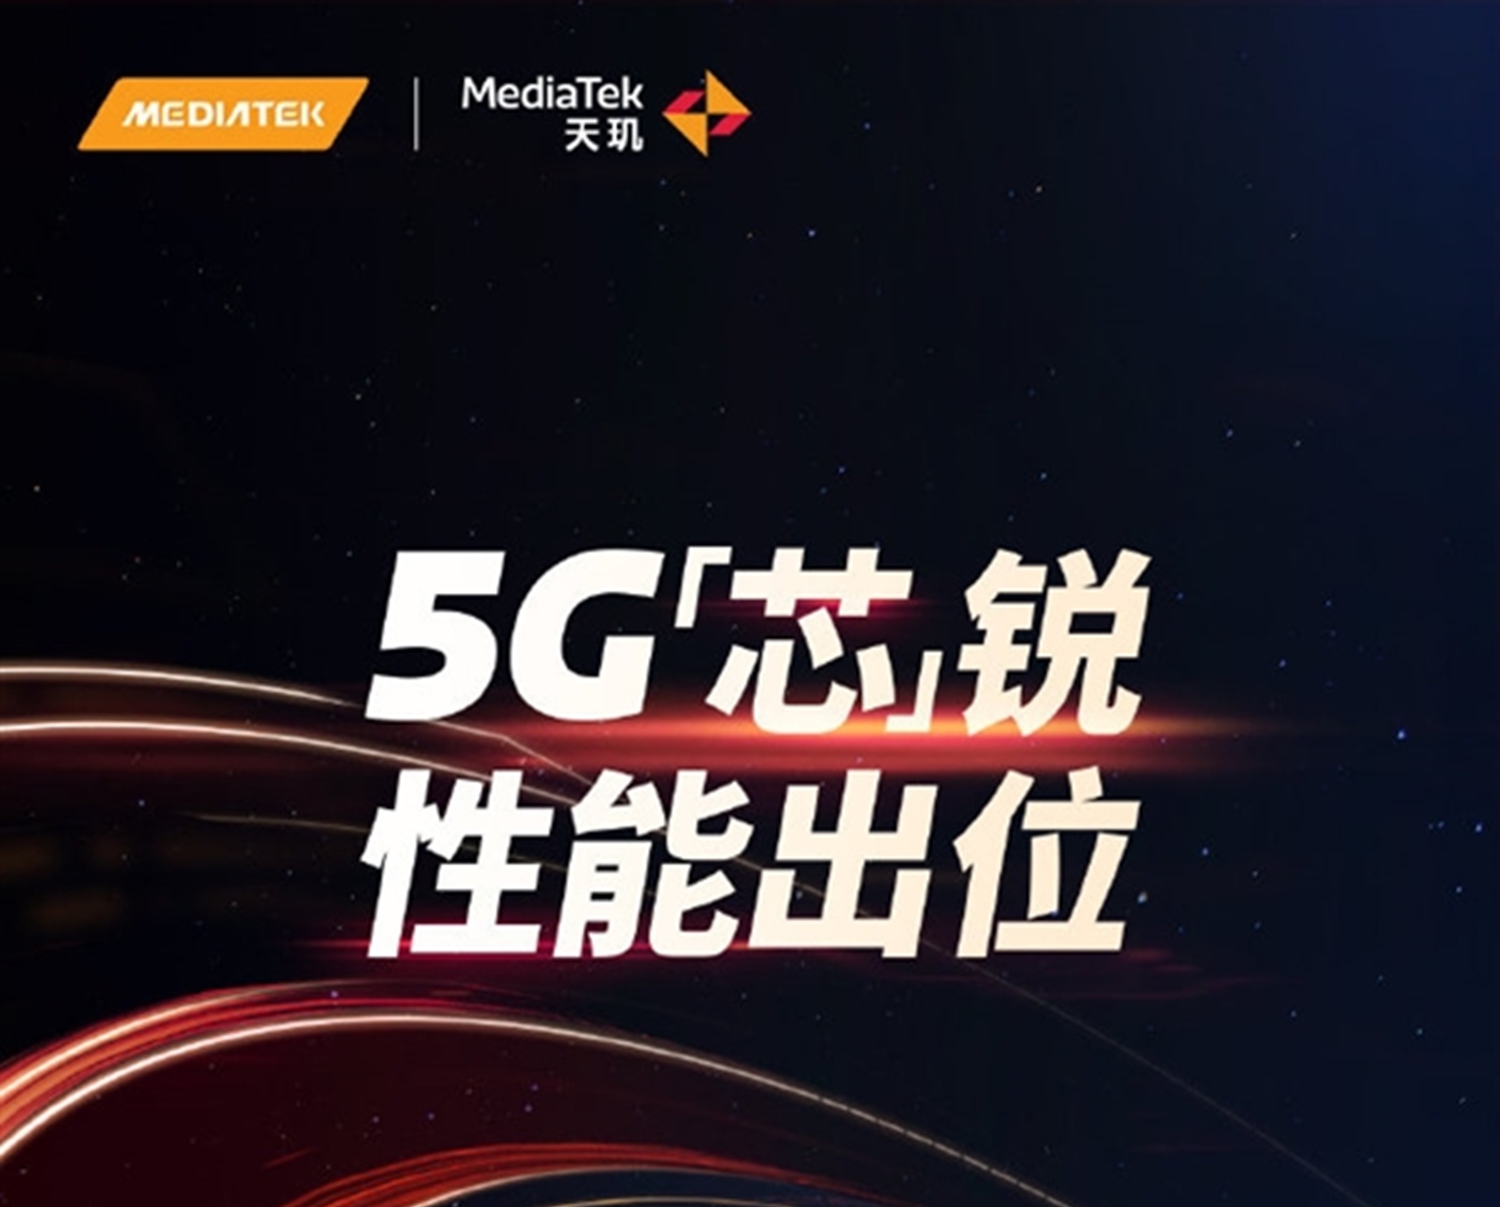 MediaTek Menjadualkan Pelancaran Pemproses Dengan Rangkaian 5G Terbaru Pada 18 Mei 2020